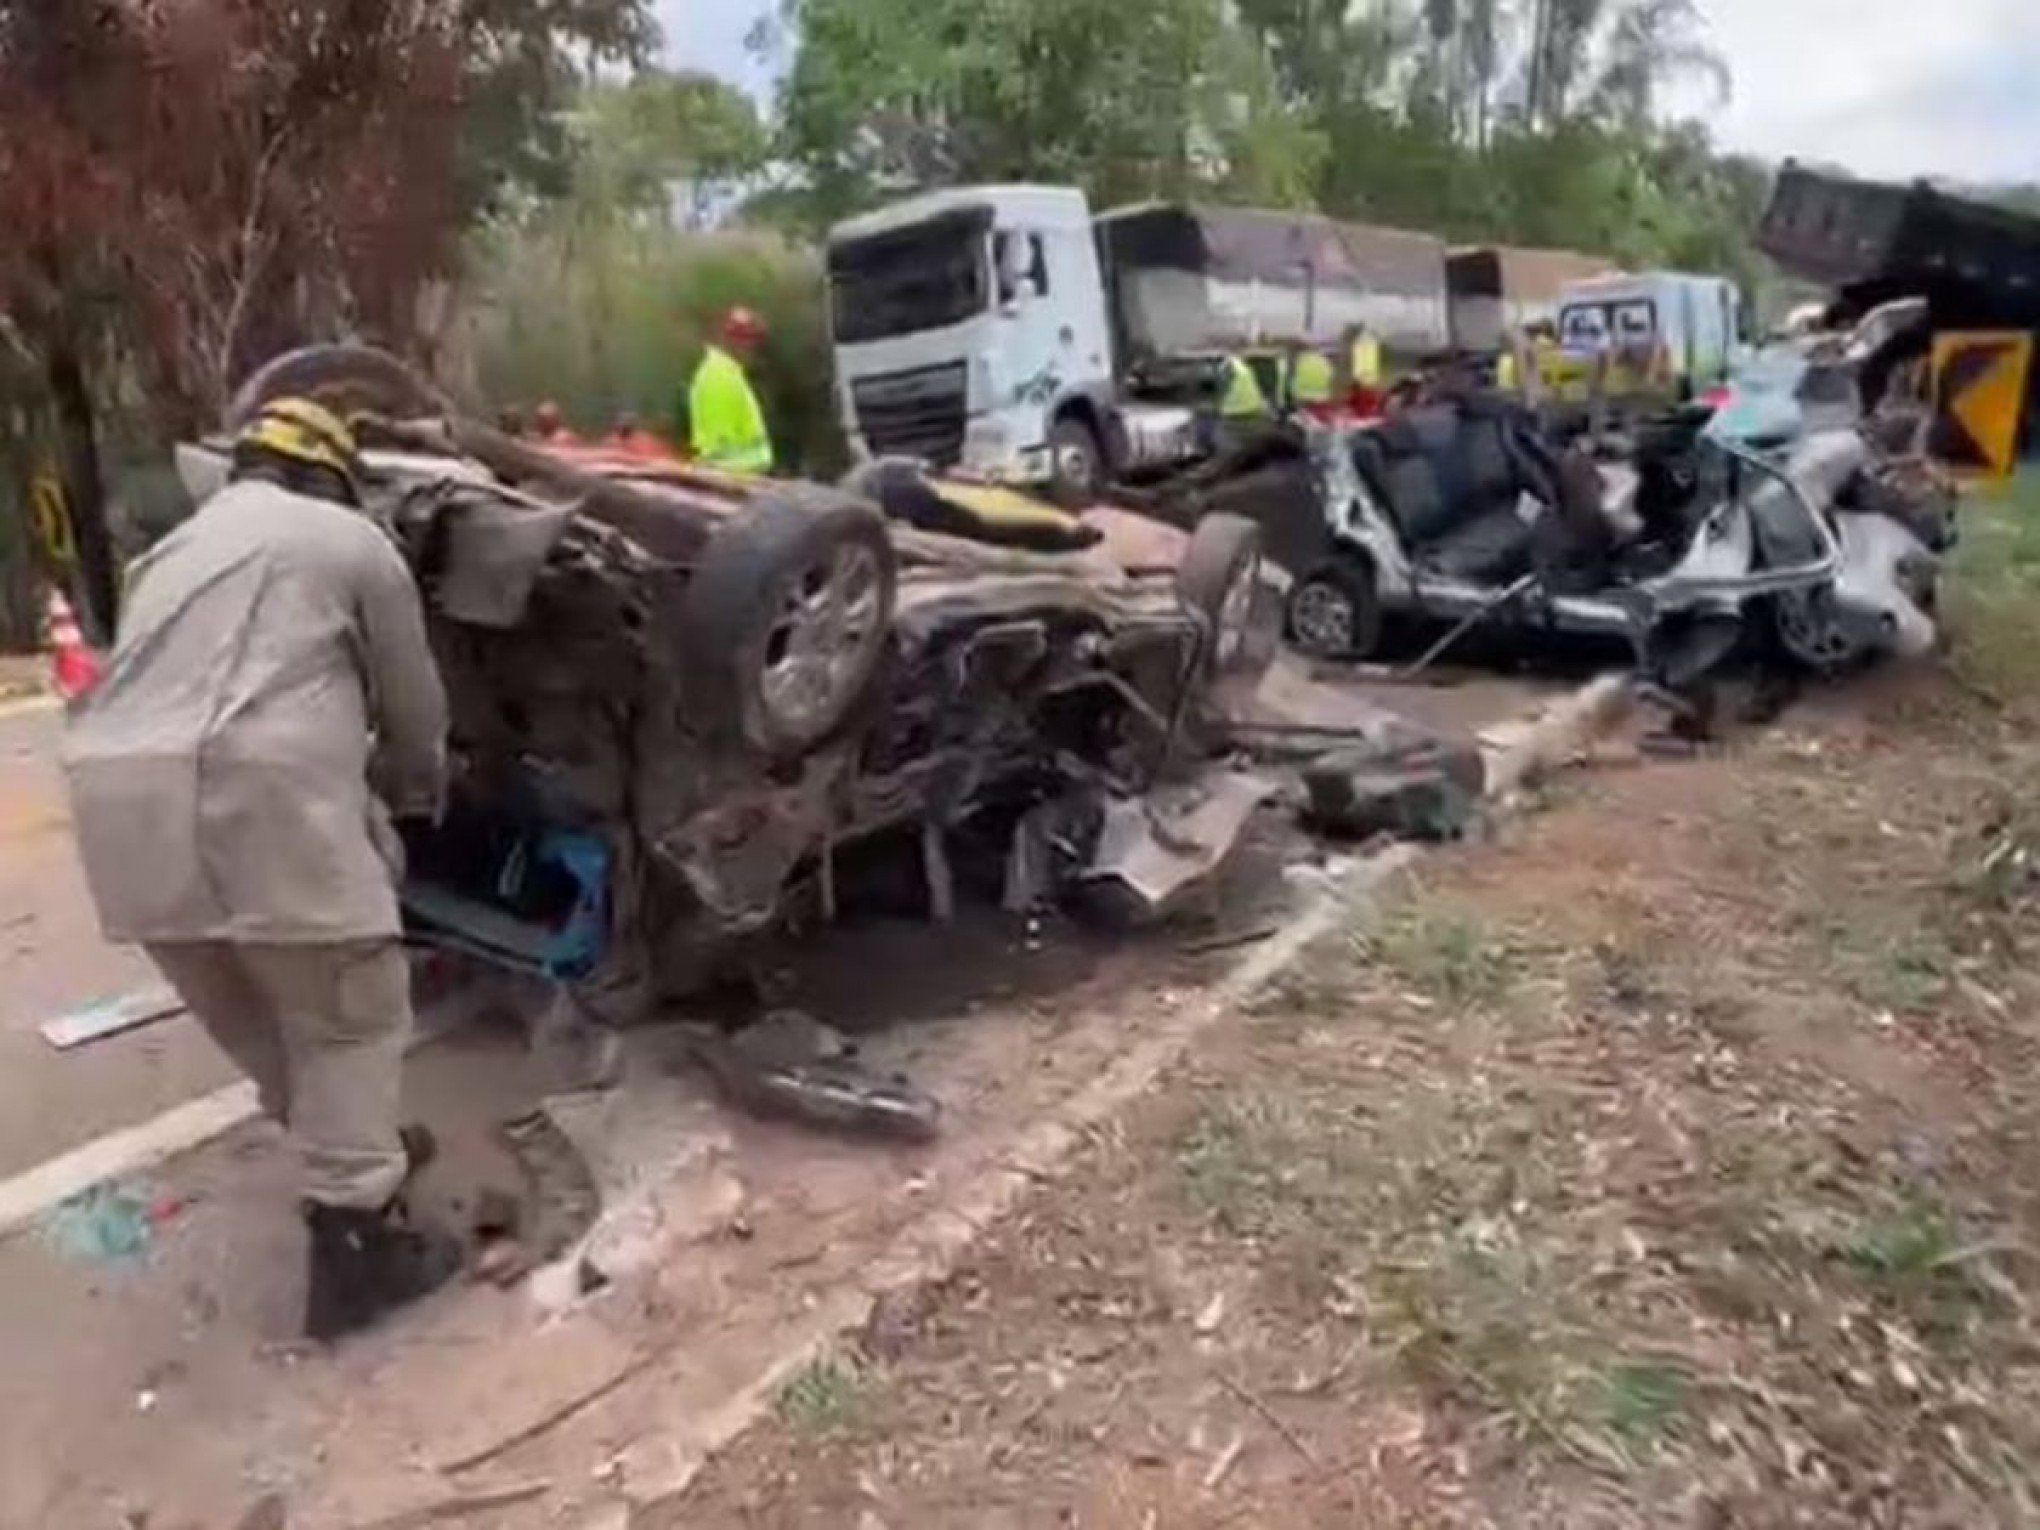 ACIDENTE DE TRÂNSITO: Caminhão perde o controle e colide com outros 17 veículos